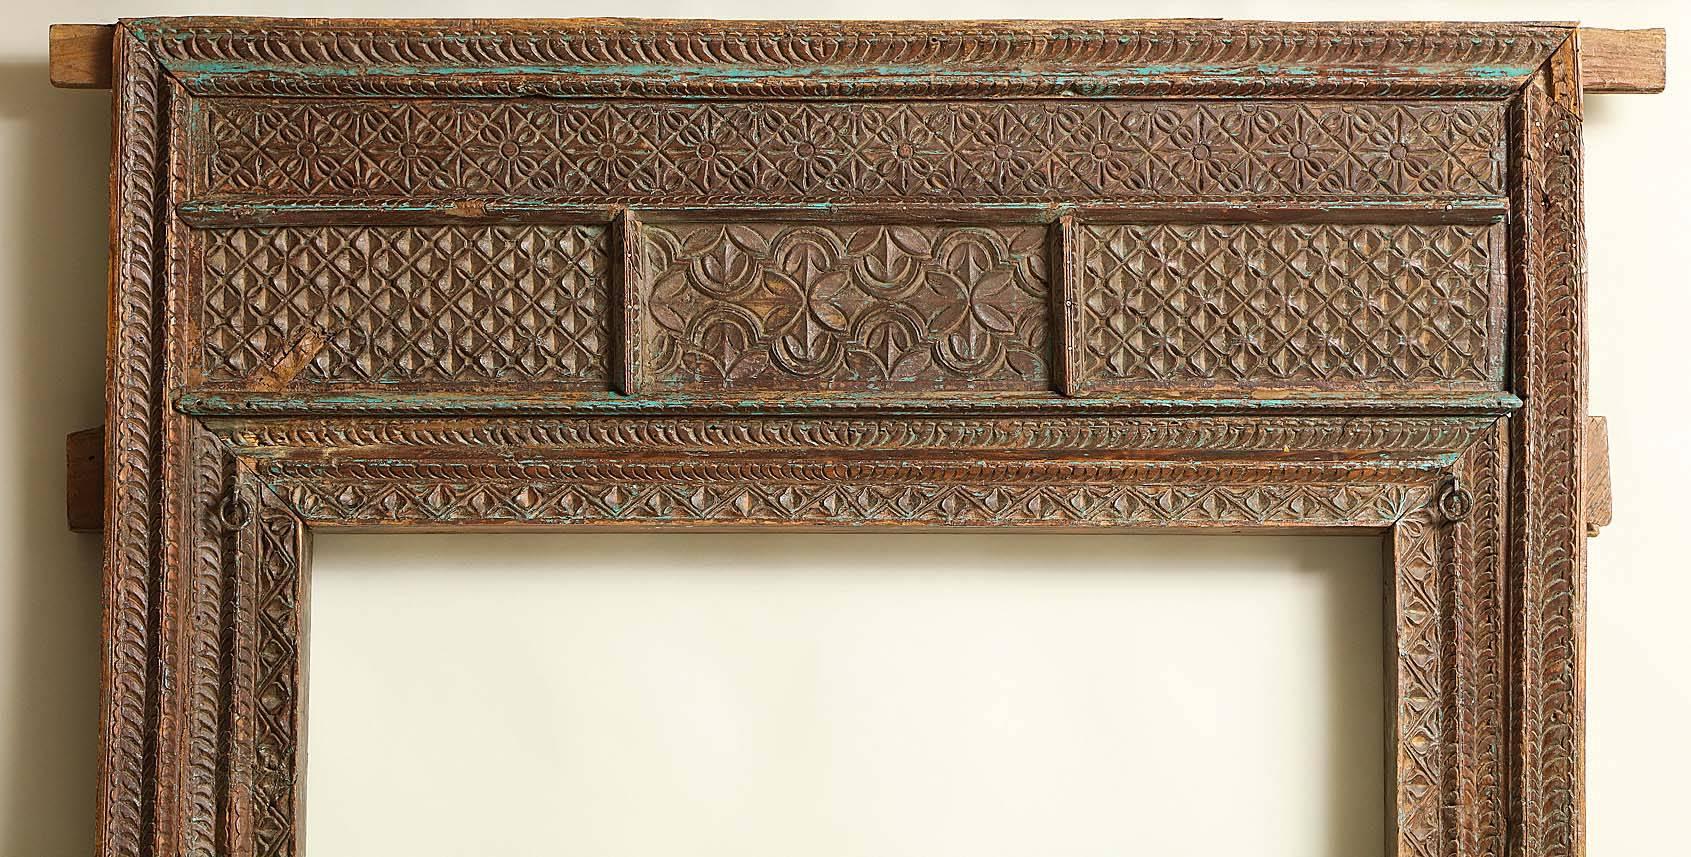 Très bonne porte indienne du XIXe siècle (ou plus tôt) sculptée de motifs géométriques et conservant une partie de son pigment bleu d'origine, de construction à tenons et mortaises qui se démonte facilement pour l'expédition et le stockage,